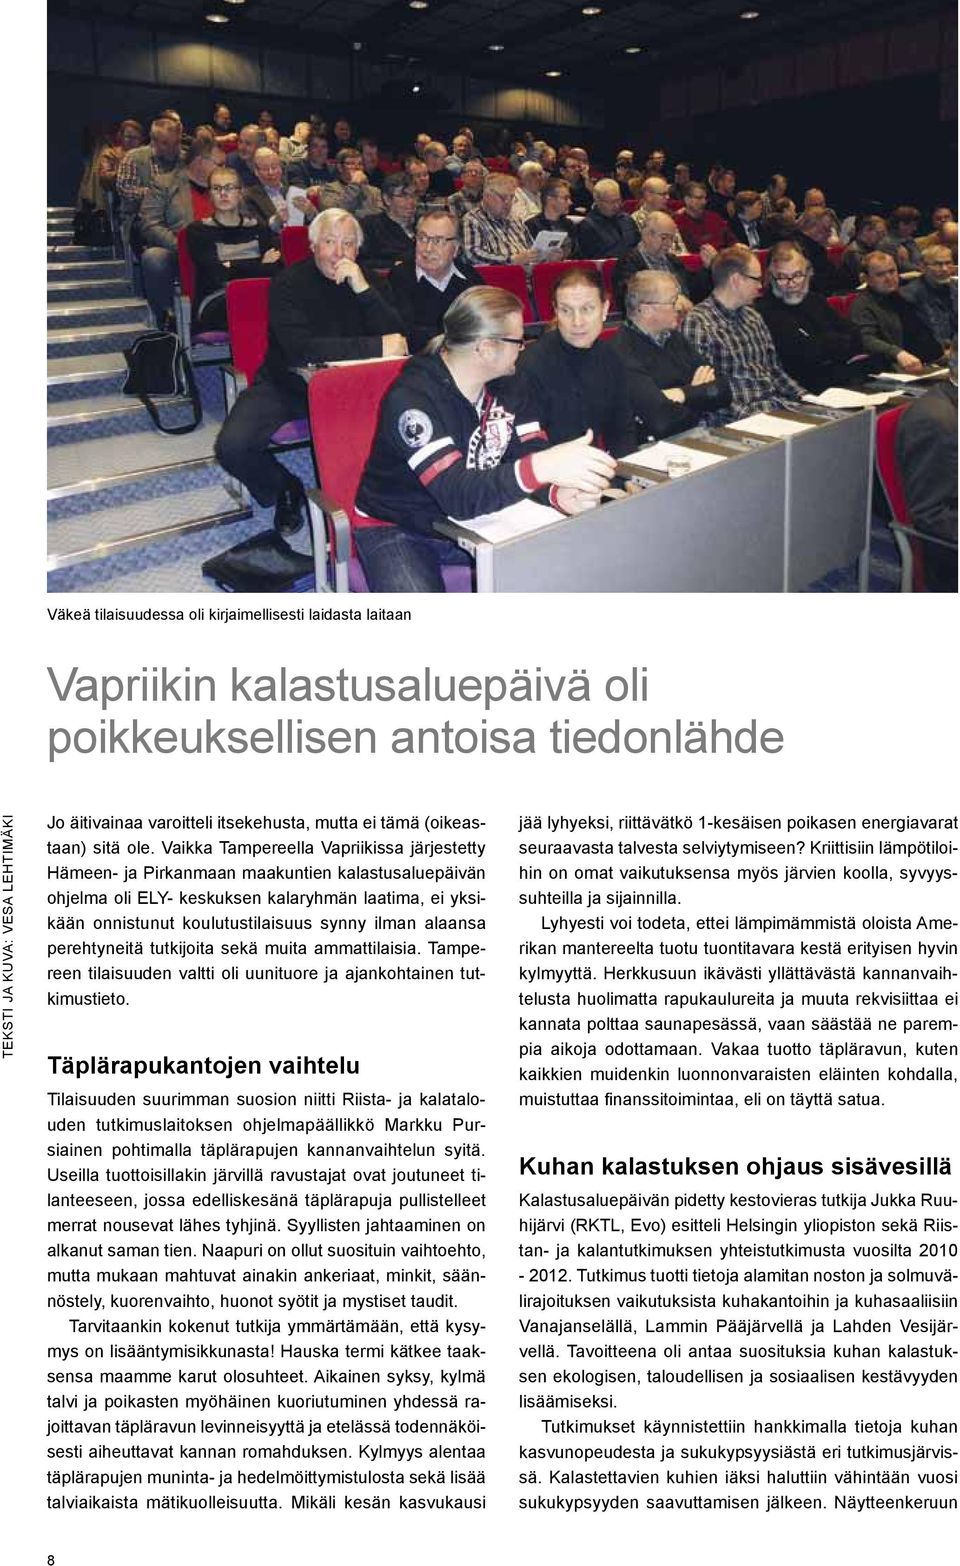 Vaikka Tampereella Vapriikissa järjestetty Hämeen- ja Pirkanmaan maakuntien kalastusaluepäivän ohjelma oli ELY- keskuksen kalaryhmän laatima, ei yksikään onnistunut koulutustilaisuus synny ilman